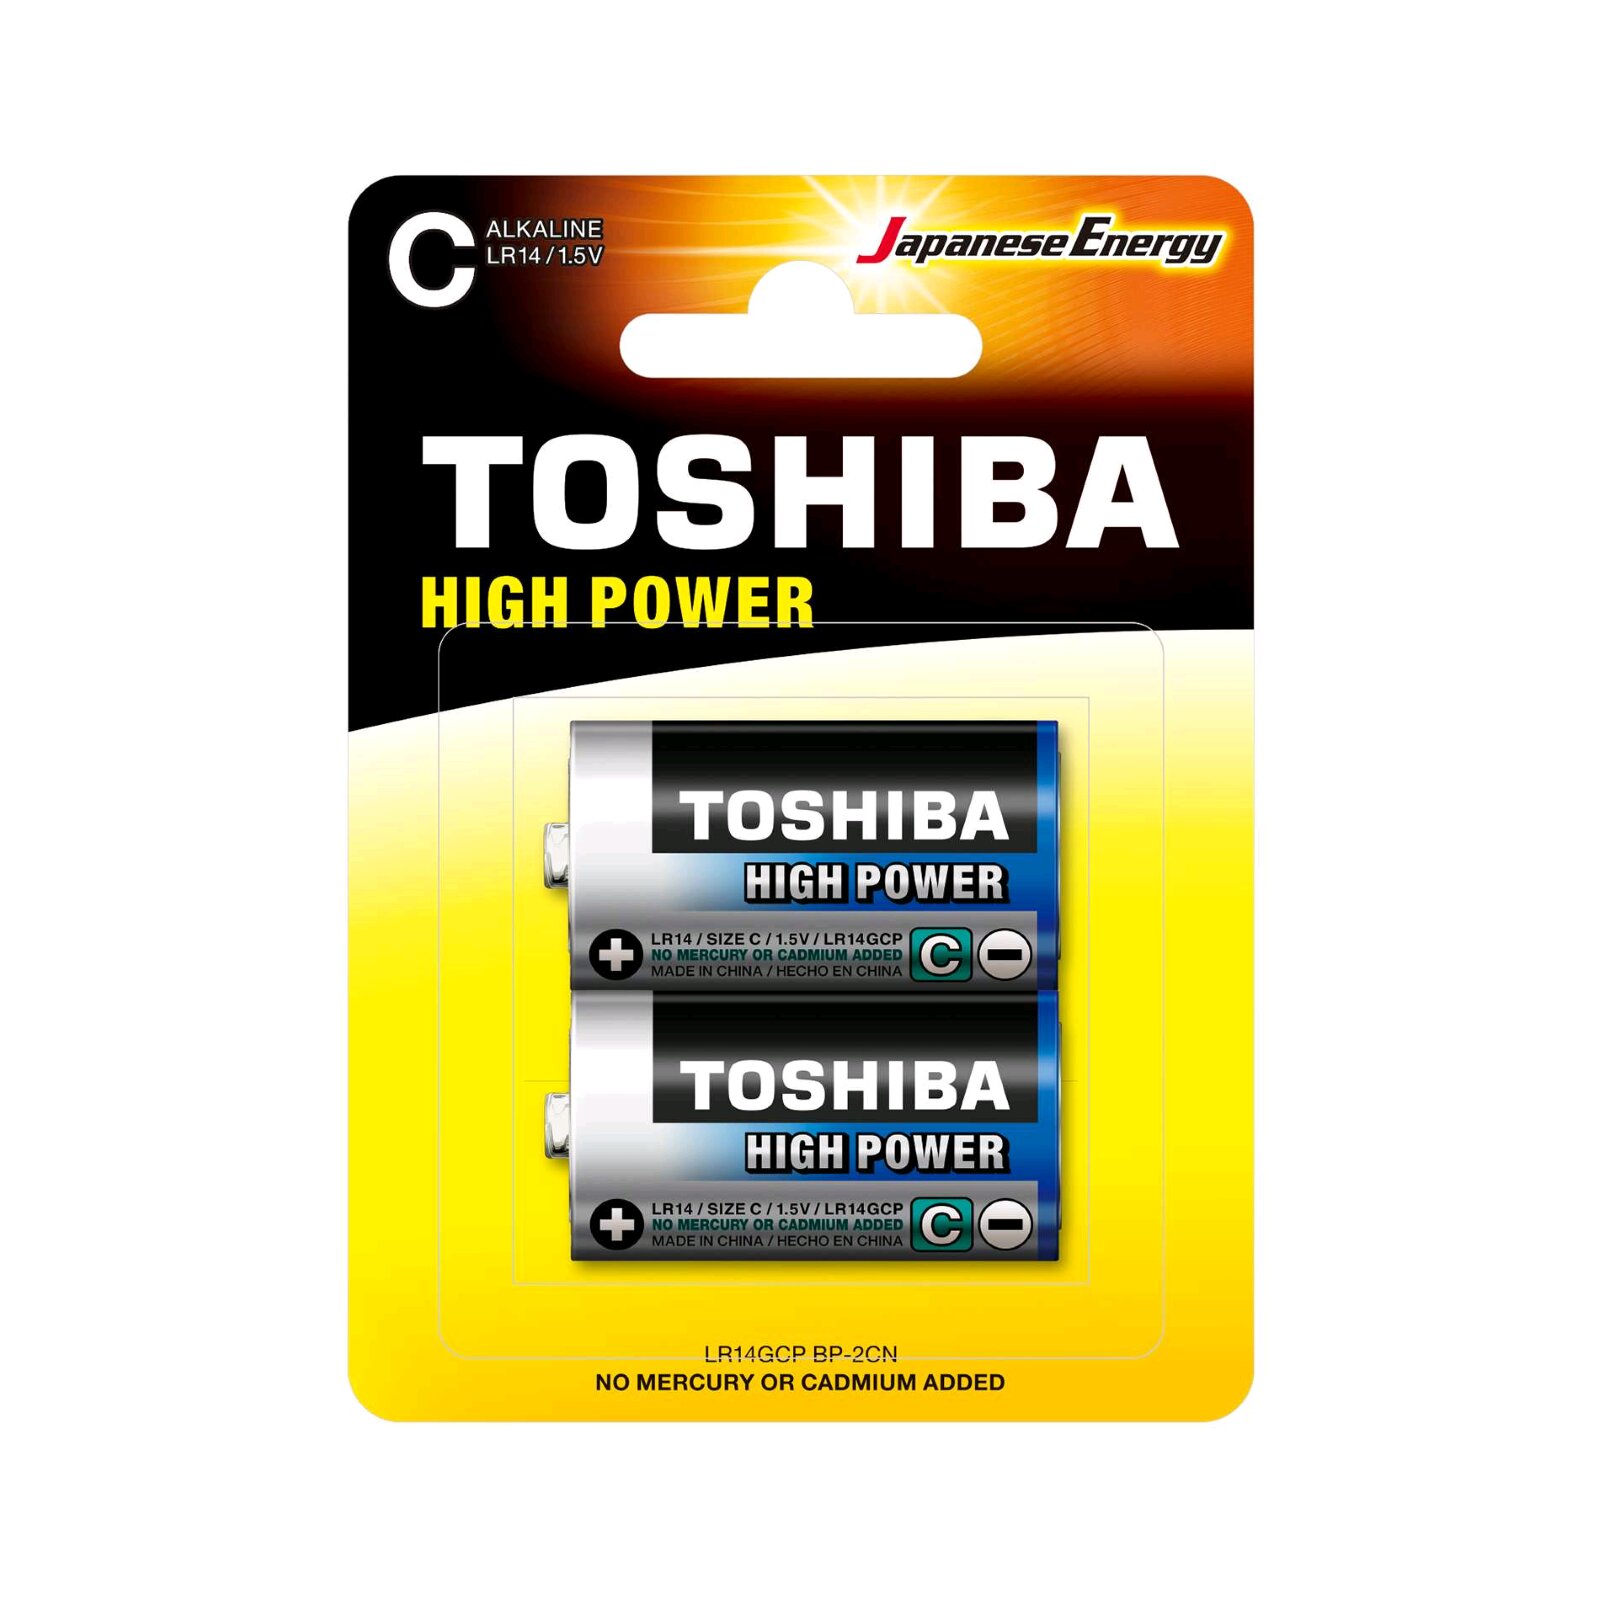 Toshiba High Power C - LR14GCP BP-2CN LR14 Batterien - 2er Pack : photo 1